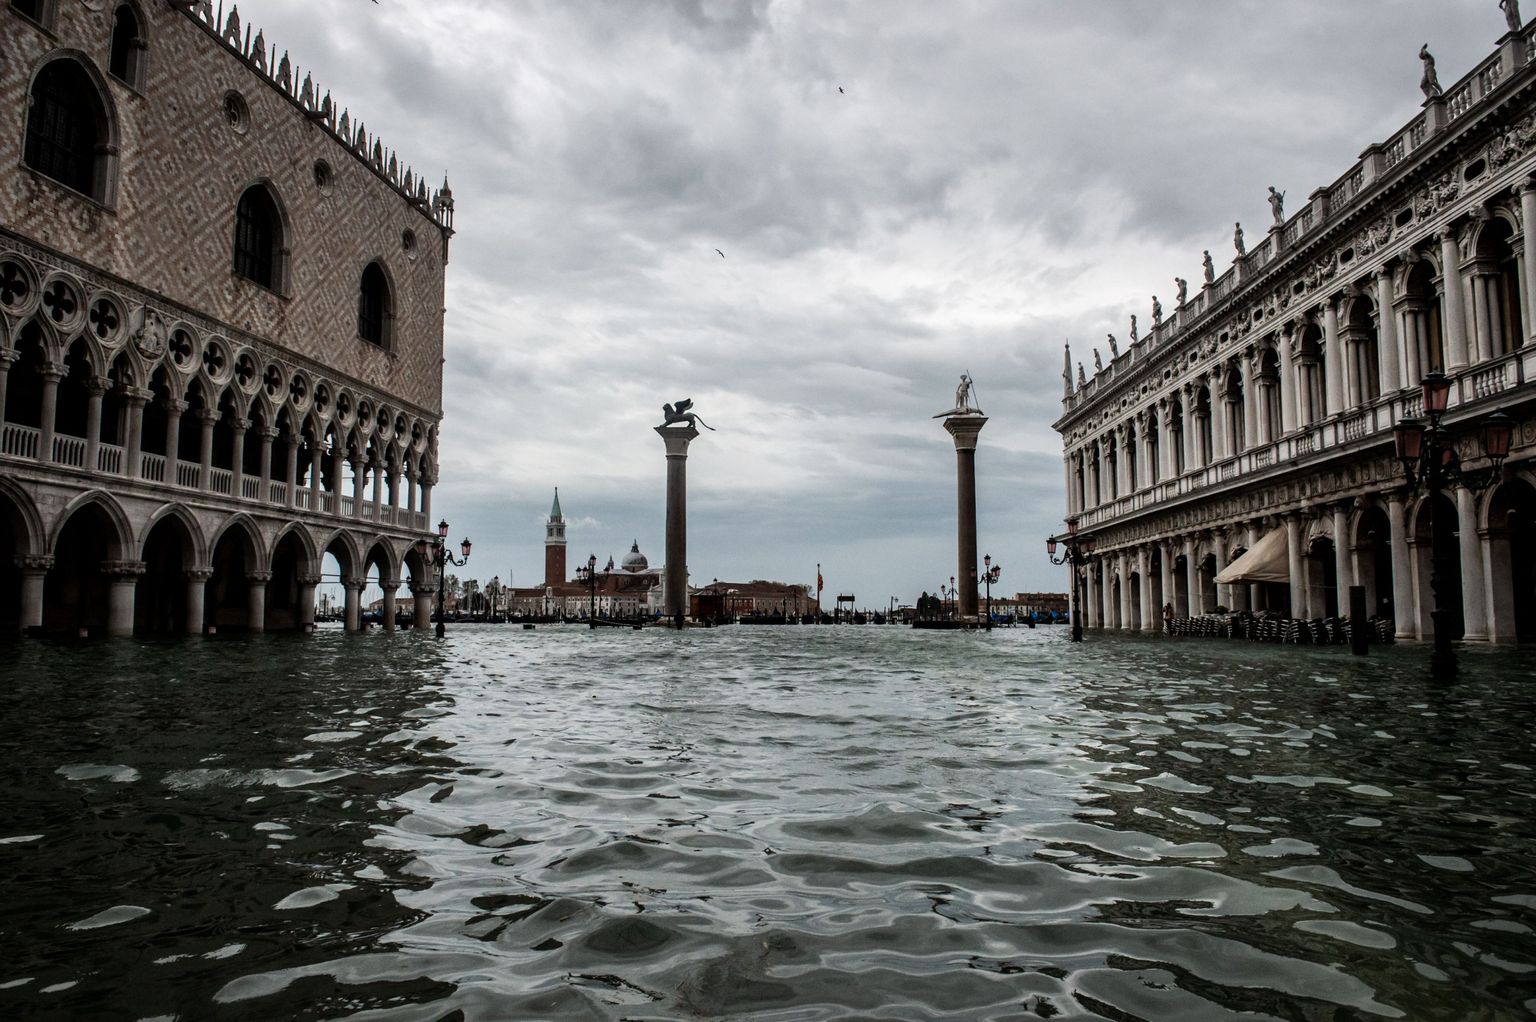 Venēcija, Svētā Marka laukums plūdos.